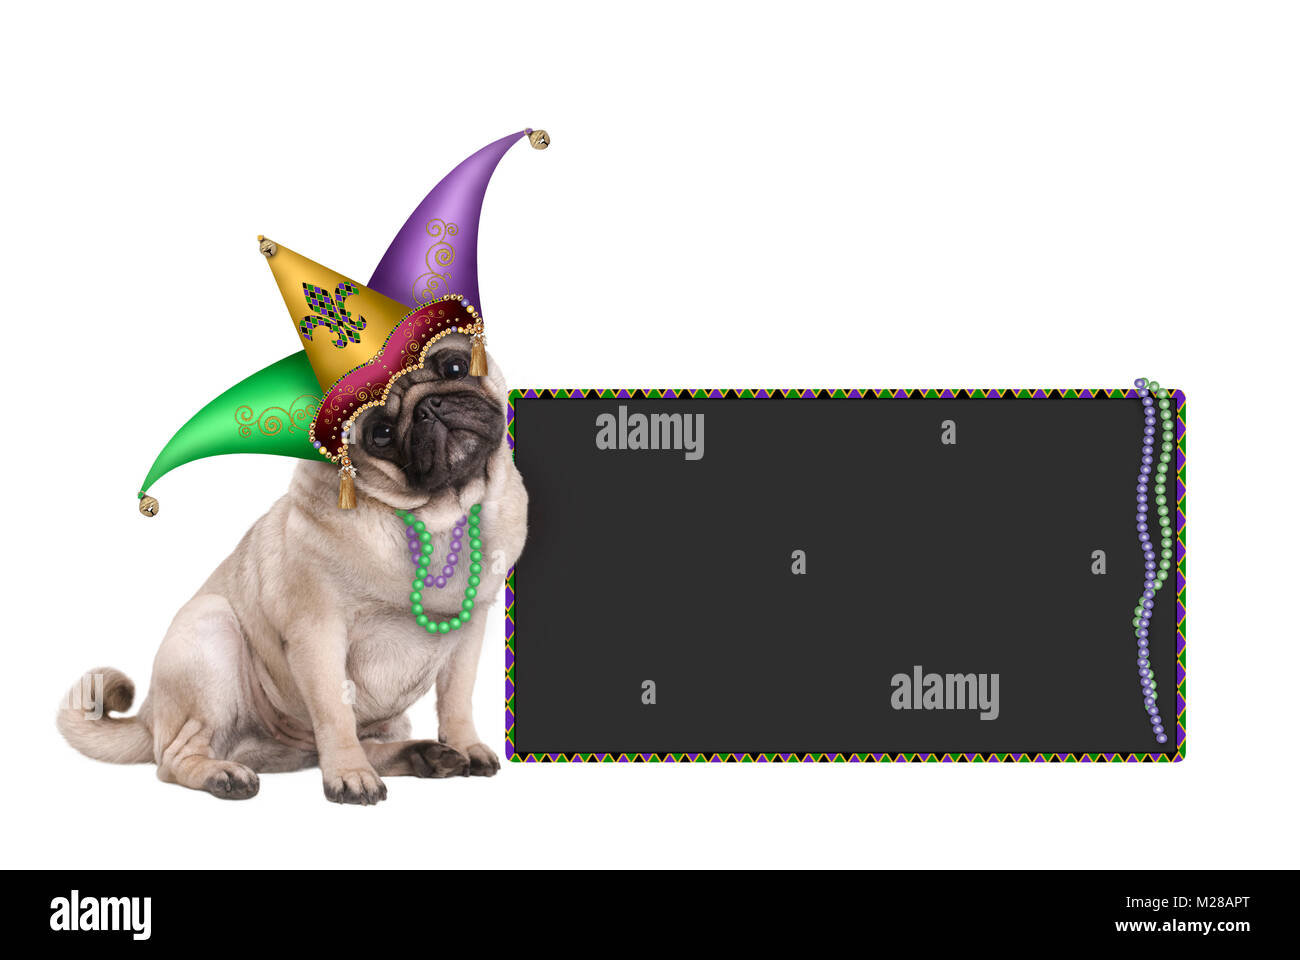 Carnaval Mardi gras mignon chiot pug dog s'asseoir avec les arlequins jester hat et tableau noir signe, isolé sur fond blanc Banque D'Images